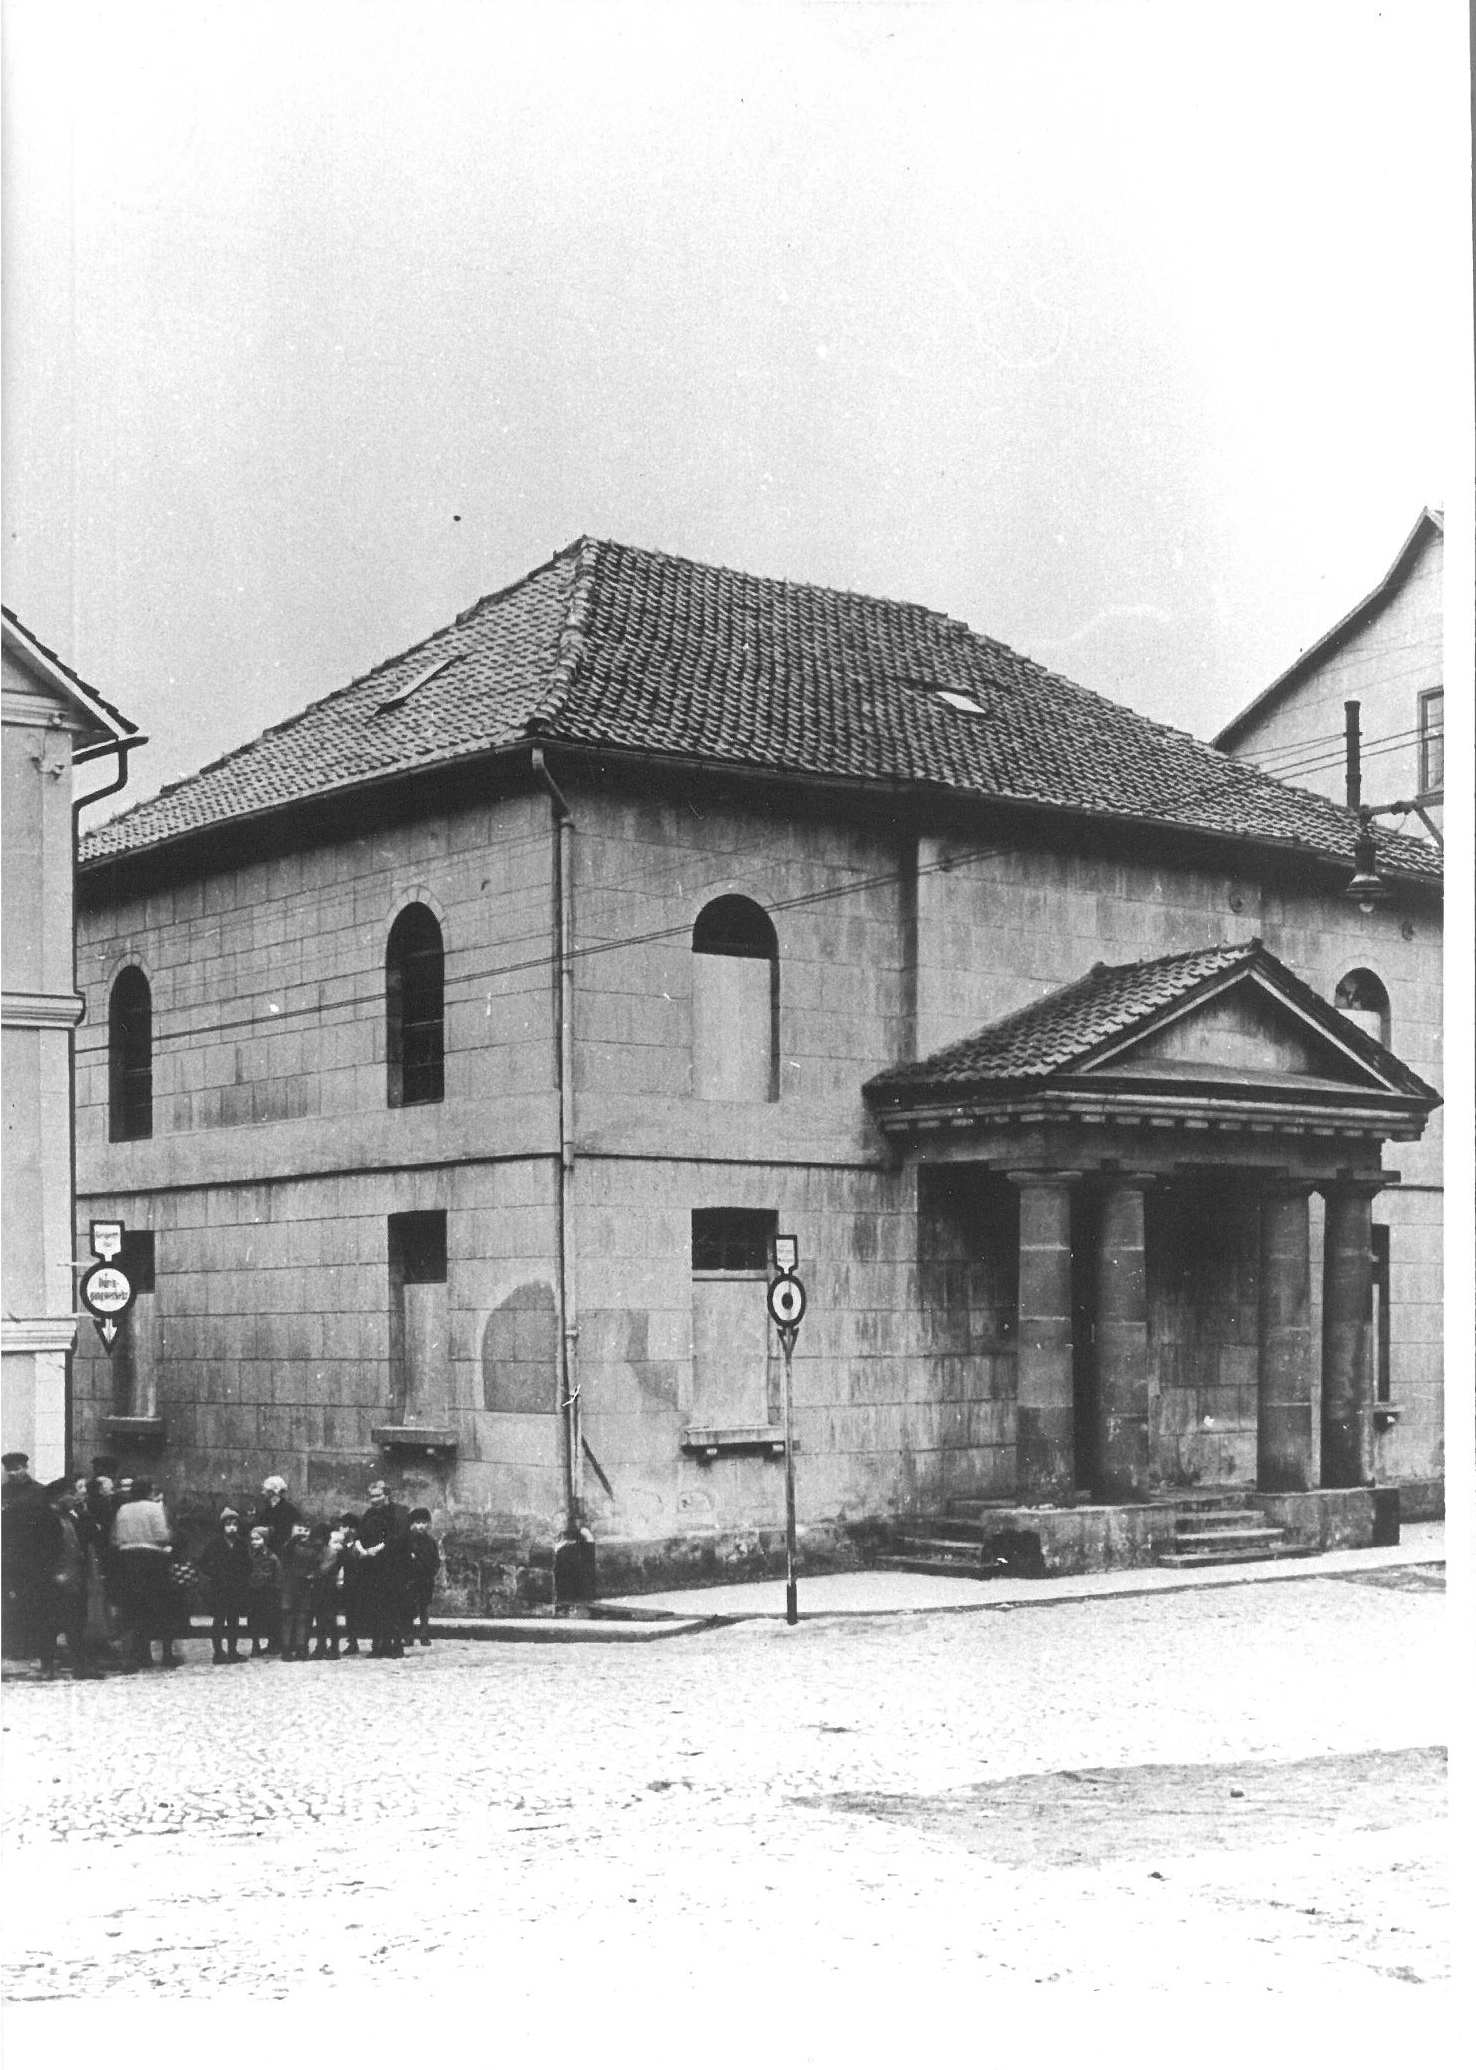 Bild der Eschweger Synagoge vor 1900